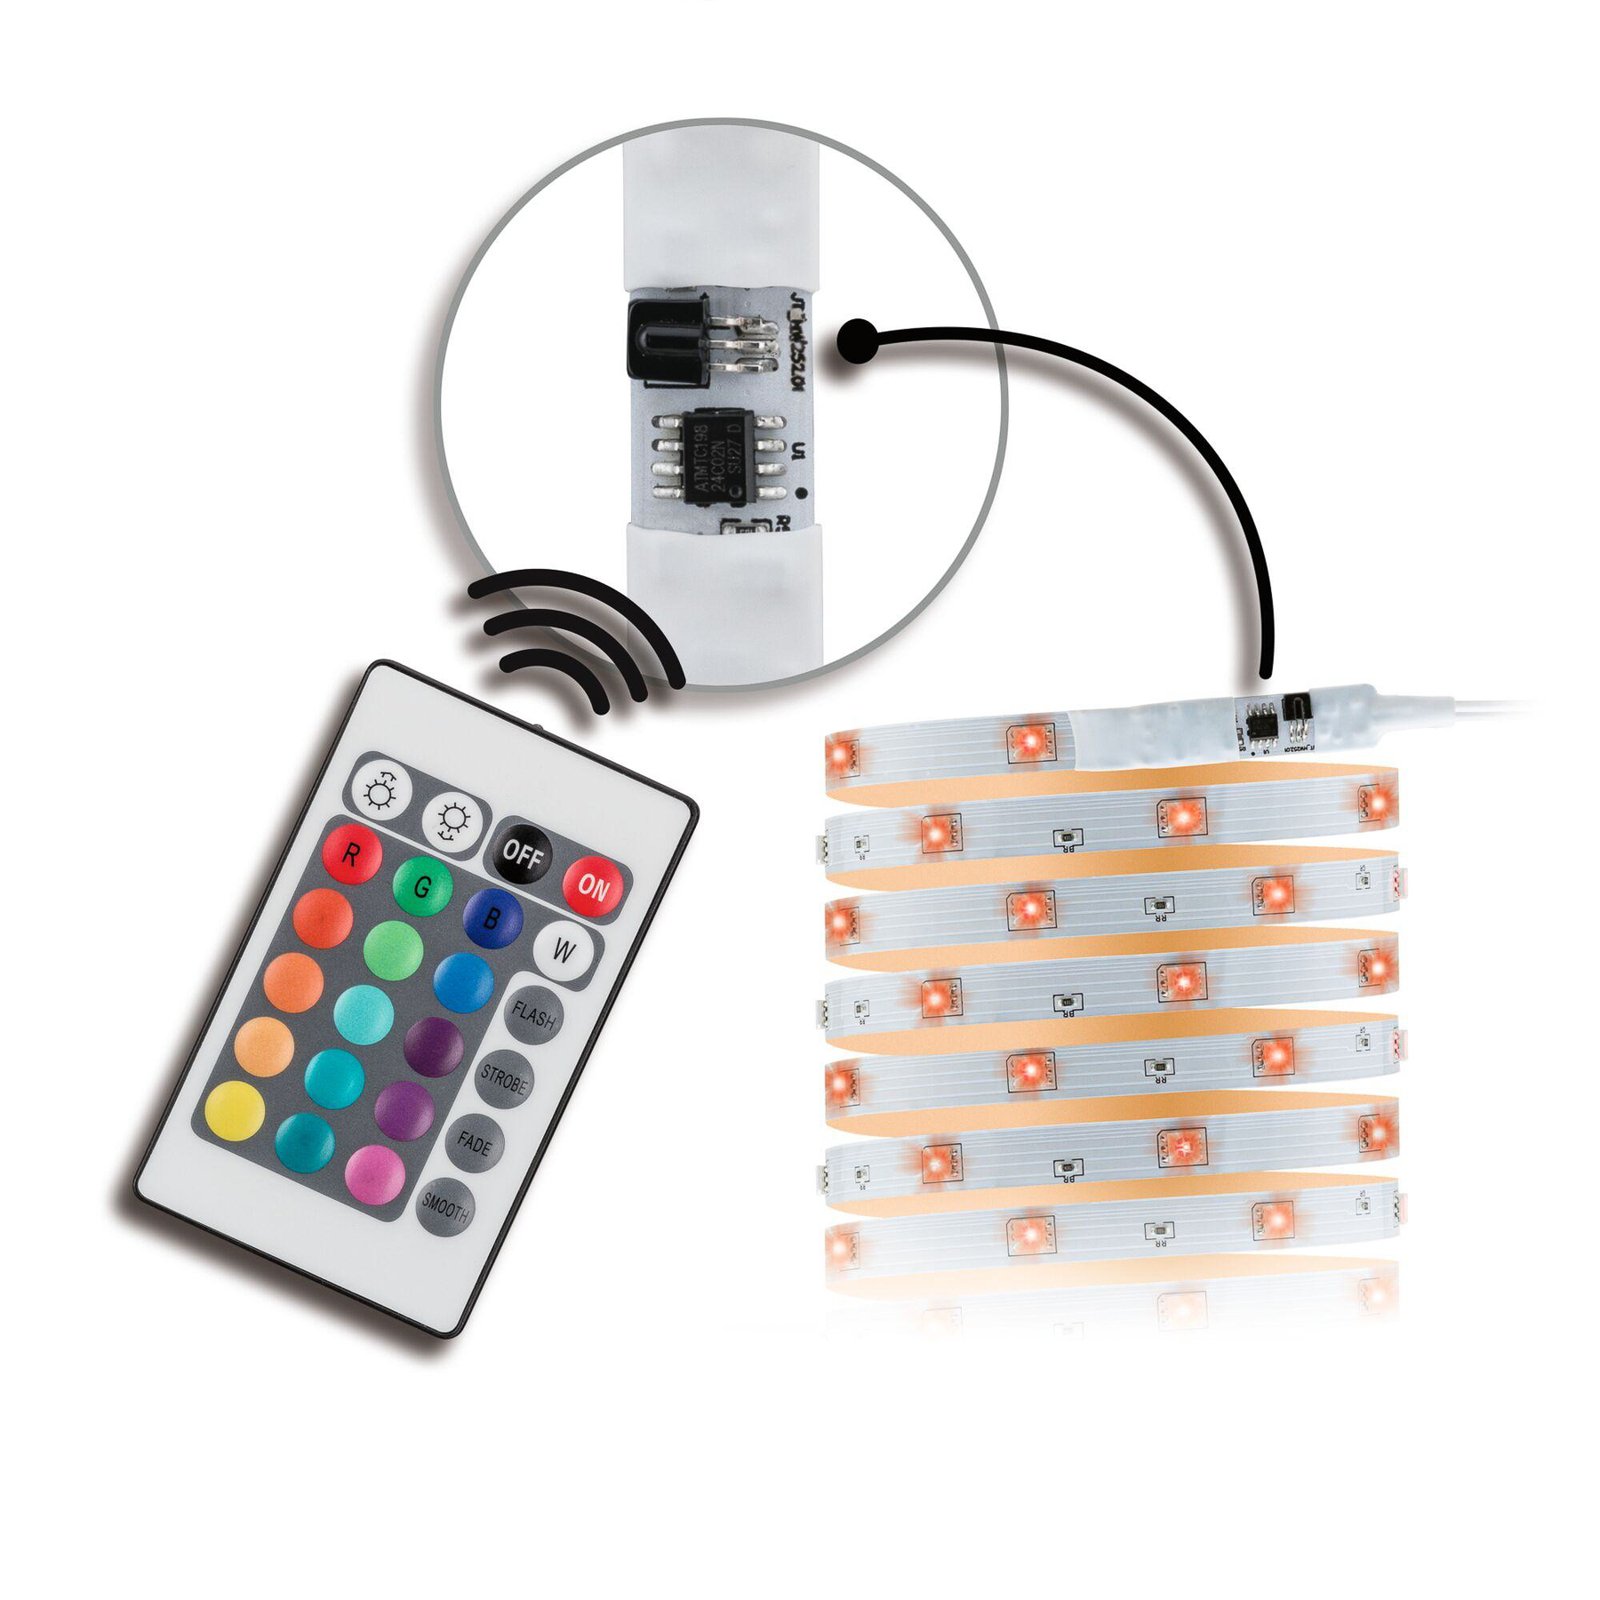 Paulmann LED szalag szett TIP, fehér, műanyag, RGB, 1000 cm, 1000 cm